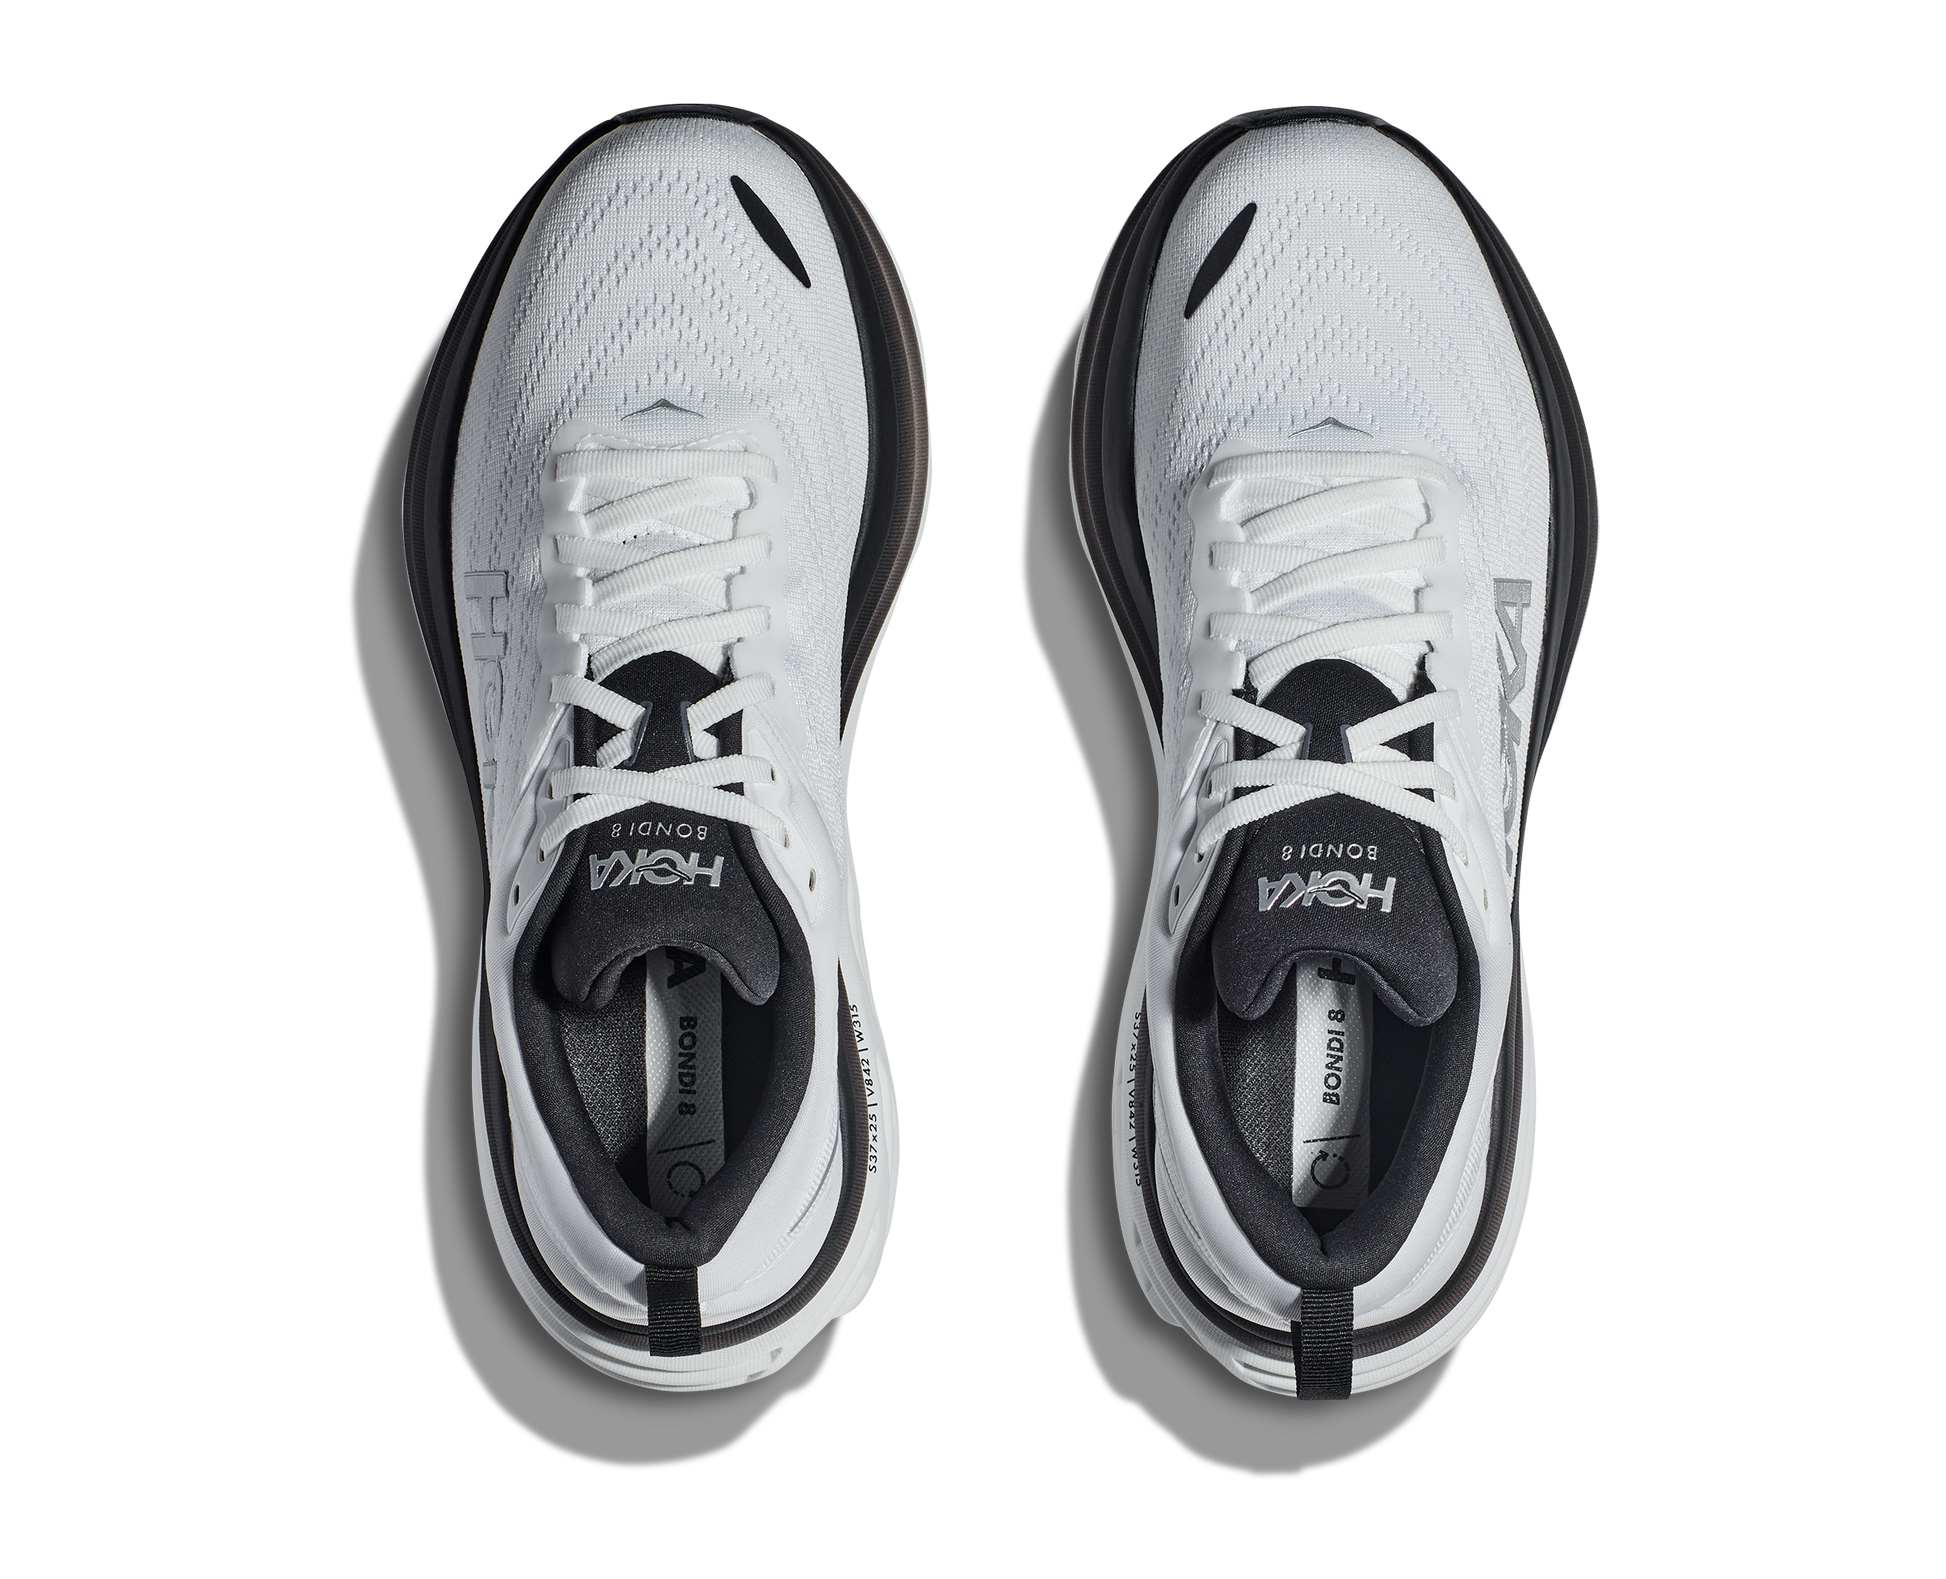 Hoka Bondi 8 i modell herr. Speciella utgåvan i vit färg med fräcka svarta detaljer. En sko som du inte ser på alla. Hos Hoka specialisterna i Sverige.